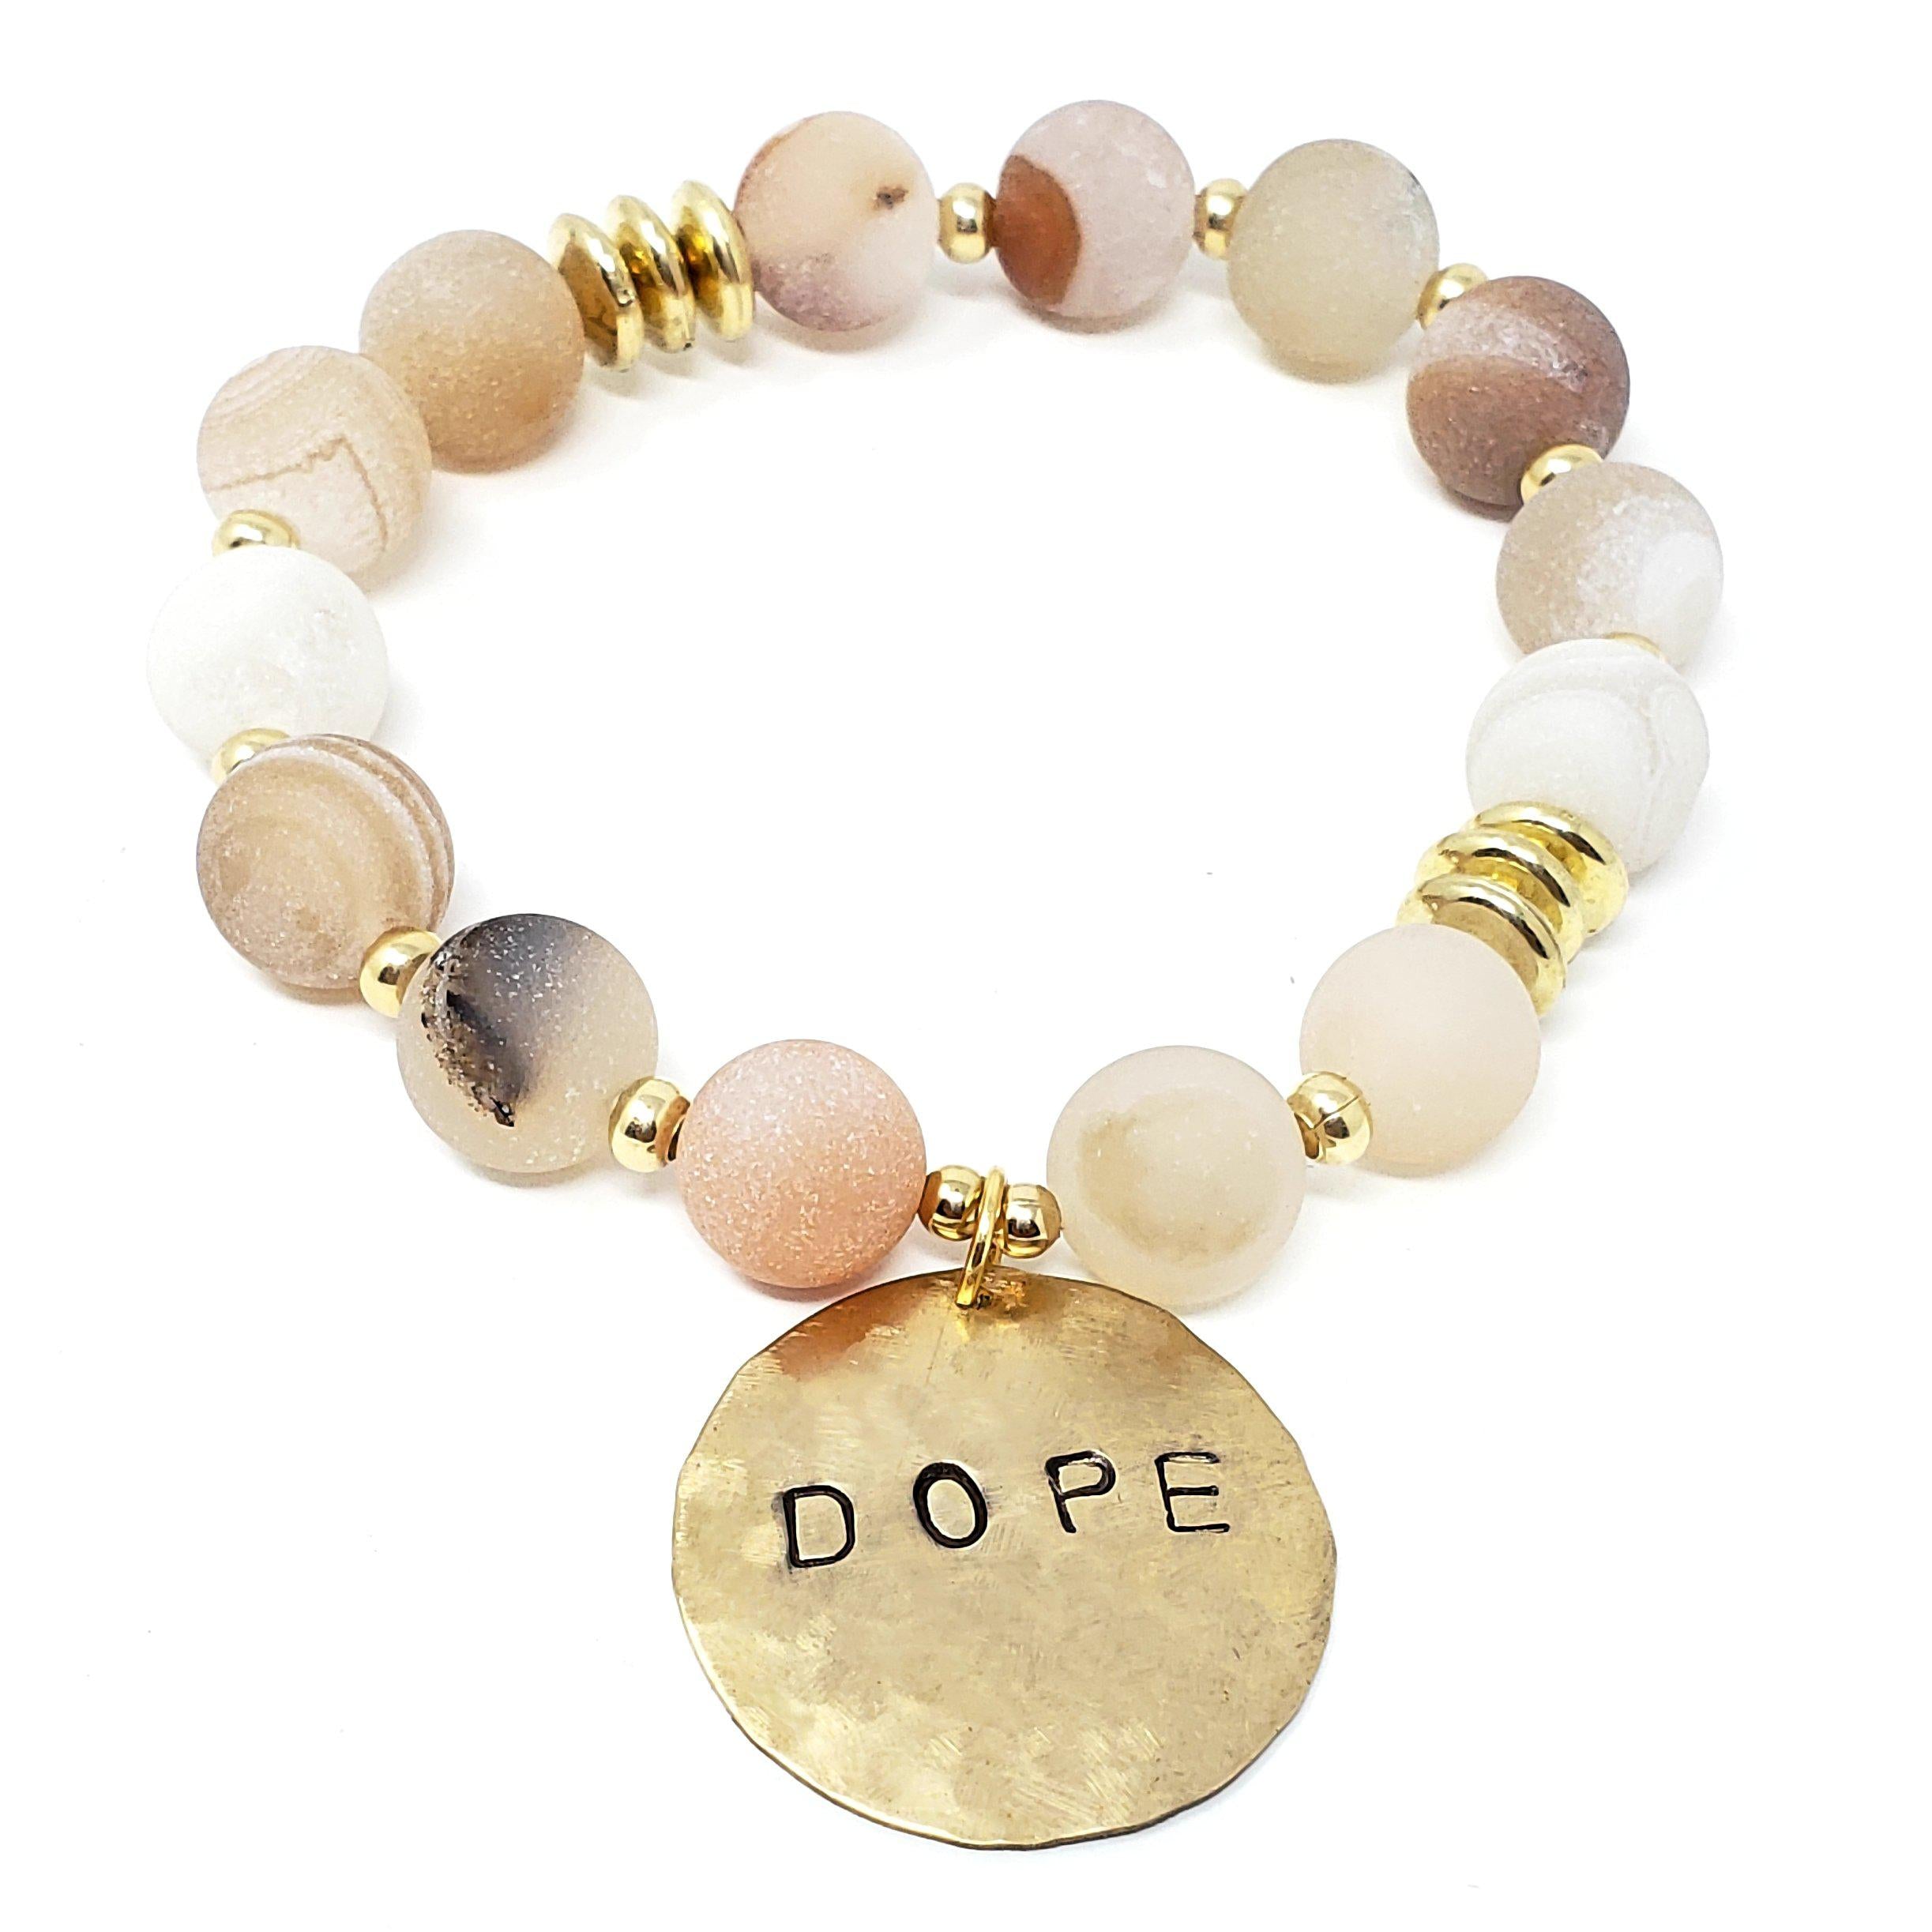 "I Am Dope" Affirmation Bracelets